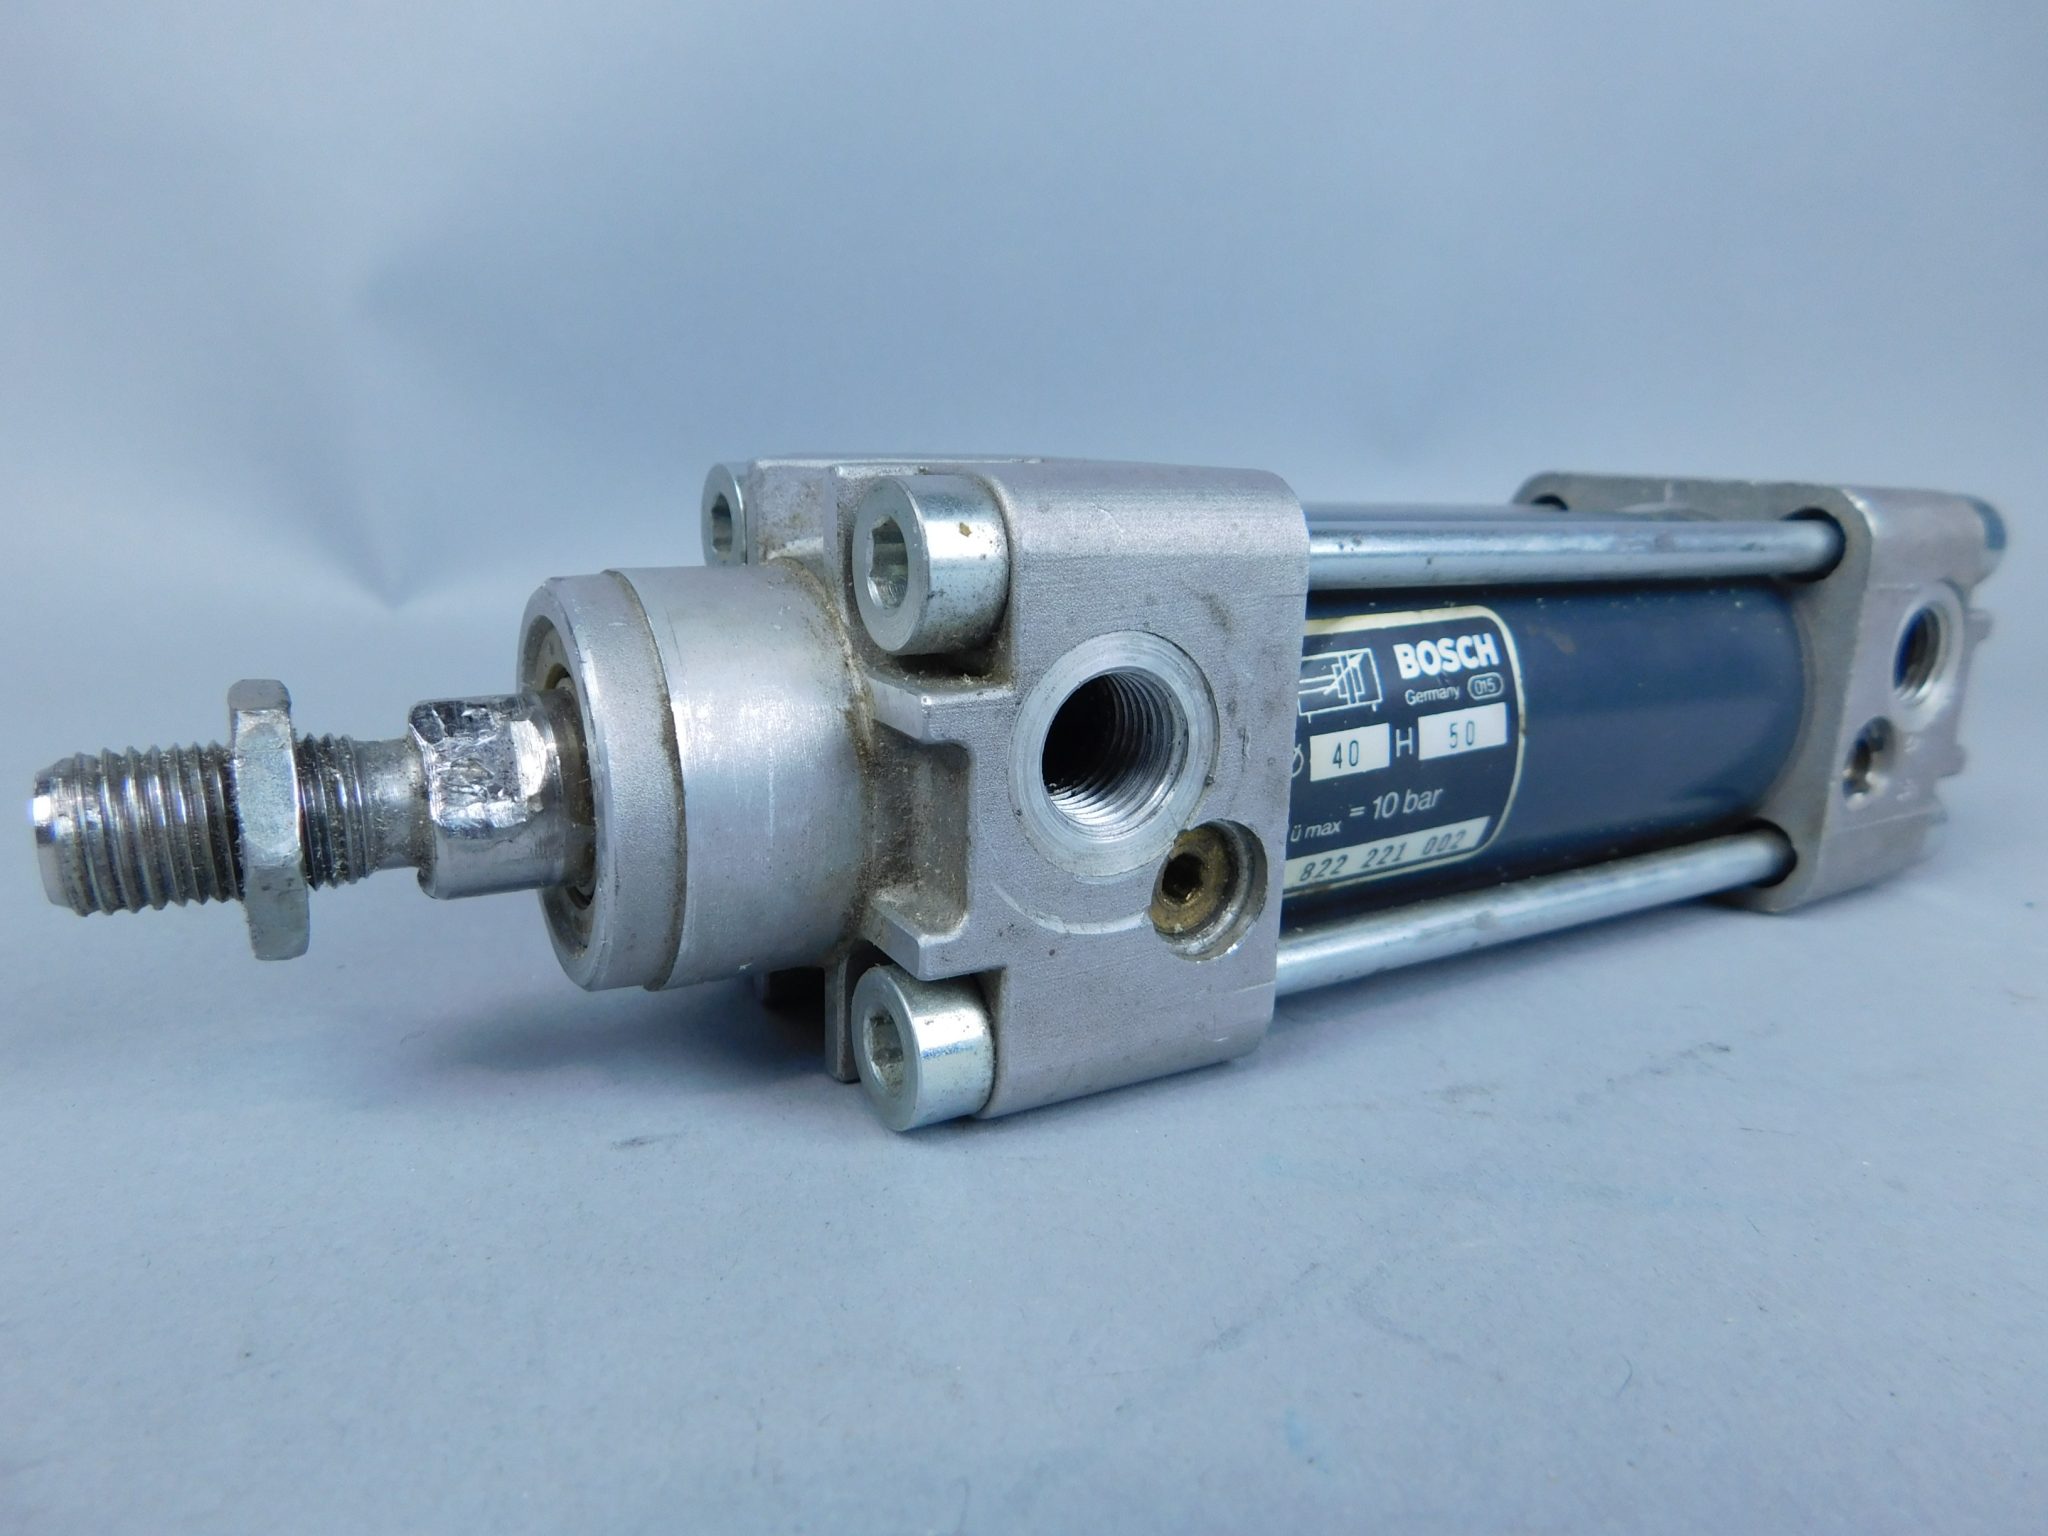 Bosch Rexroth P-068151-K0002 Pneumatic Cylinder 2 Piston & Tube Seal Kit Sealed 